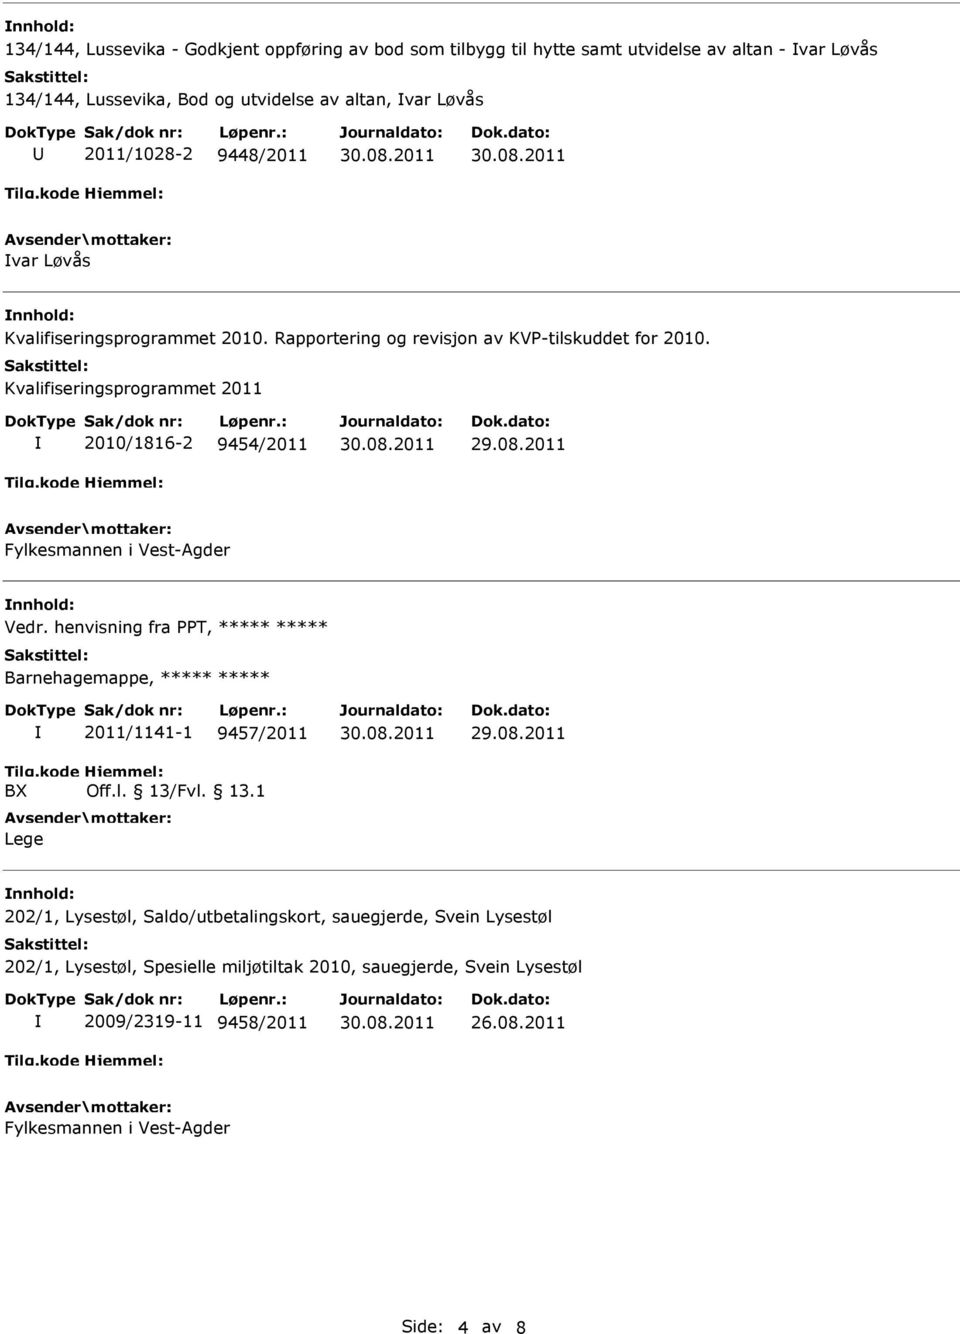 Kvalifiseringsprogrammet 2011 2010/1816-2 9454/2011 Fylkesmannen i Vest-Agder Vedr.